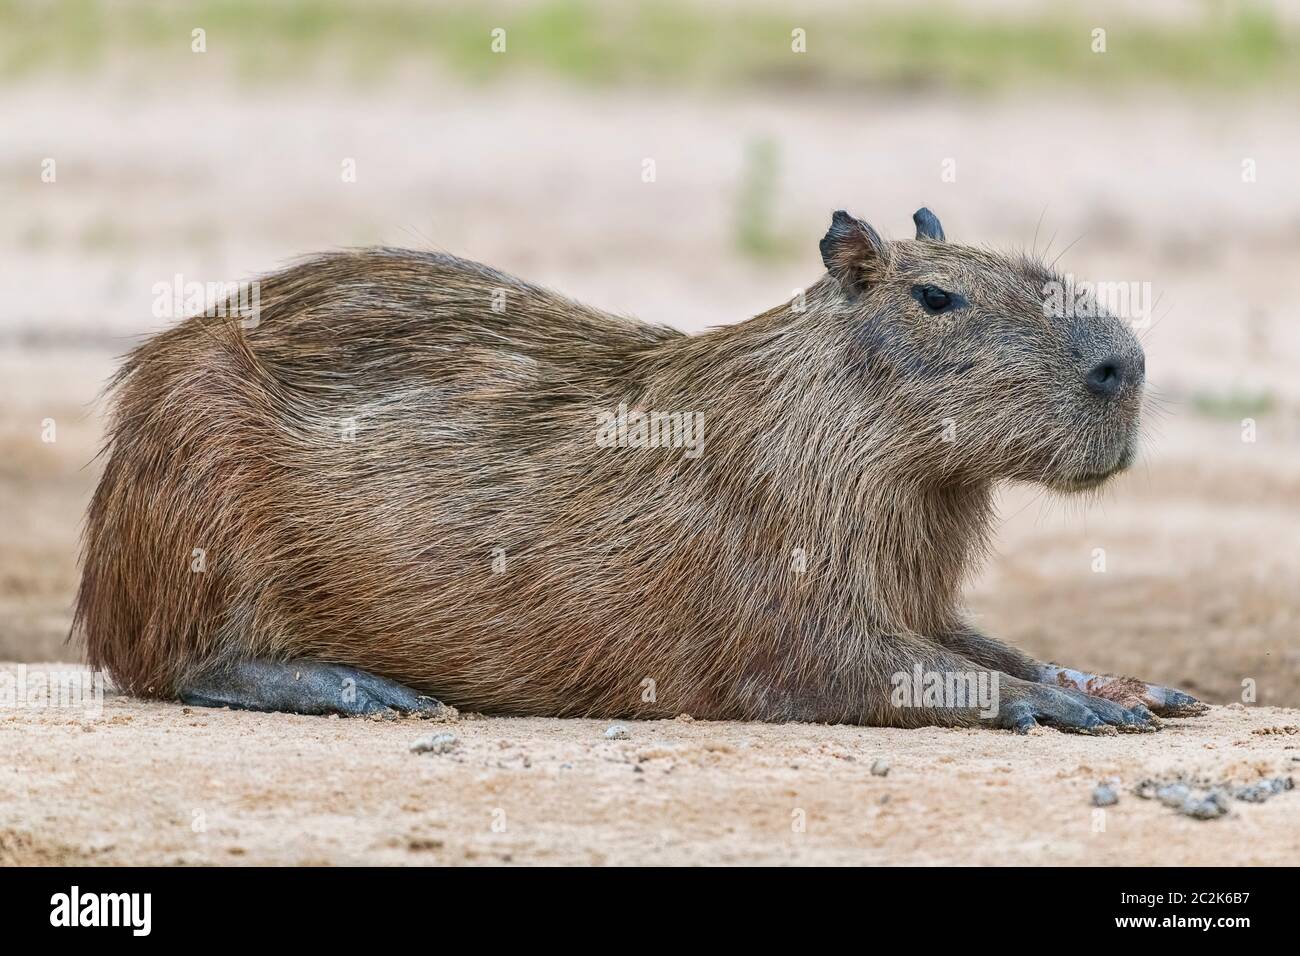 Capybara oder Wasserschwein (Hydrochoerus hydrochaeris) ruht entspannt auf einer sandbank, Pantanal, Mato Grosso, Brasilien Foto Stock